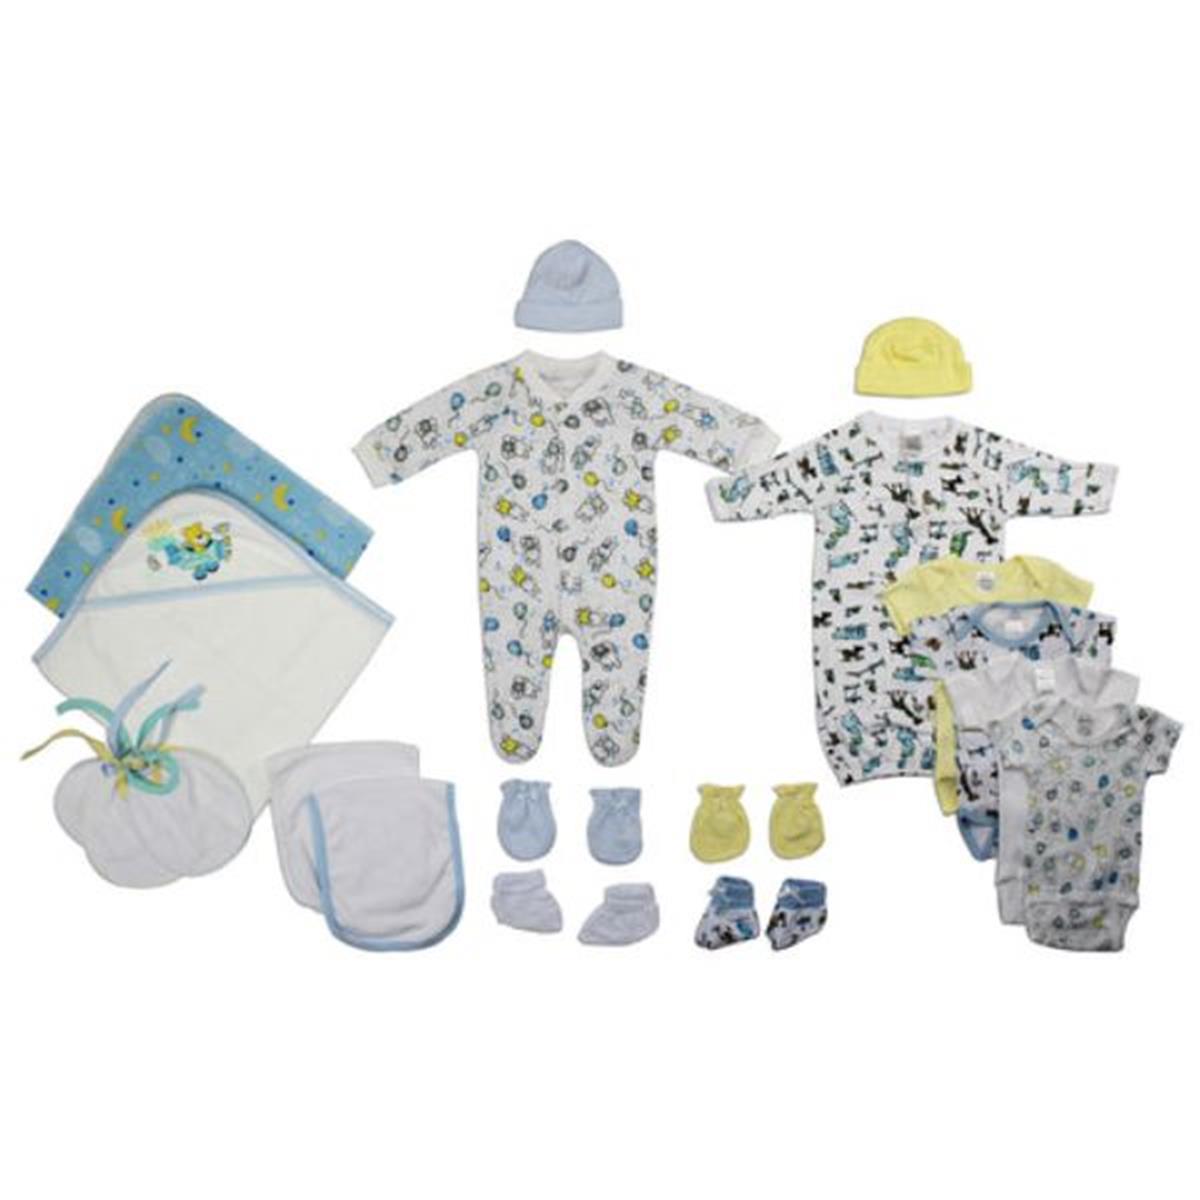 Bambini LS-0020 Newborn Baby Boy Layette Baby Shower Gift Set&#44; White & Blue - Newborn